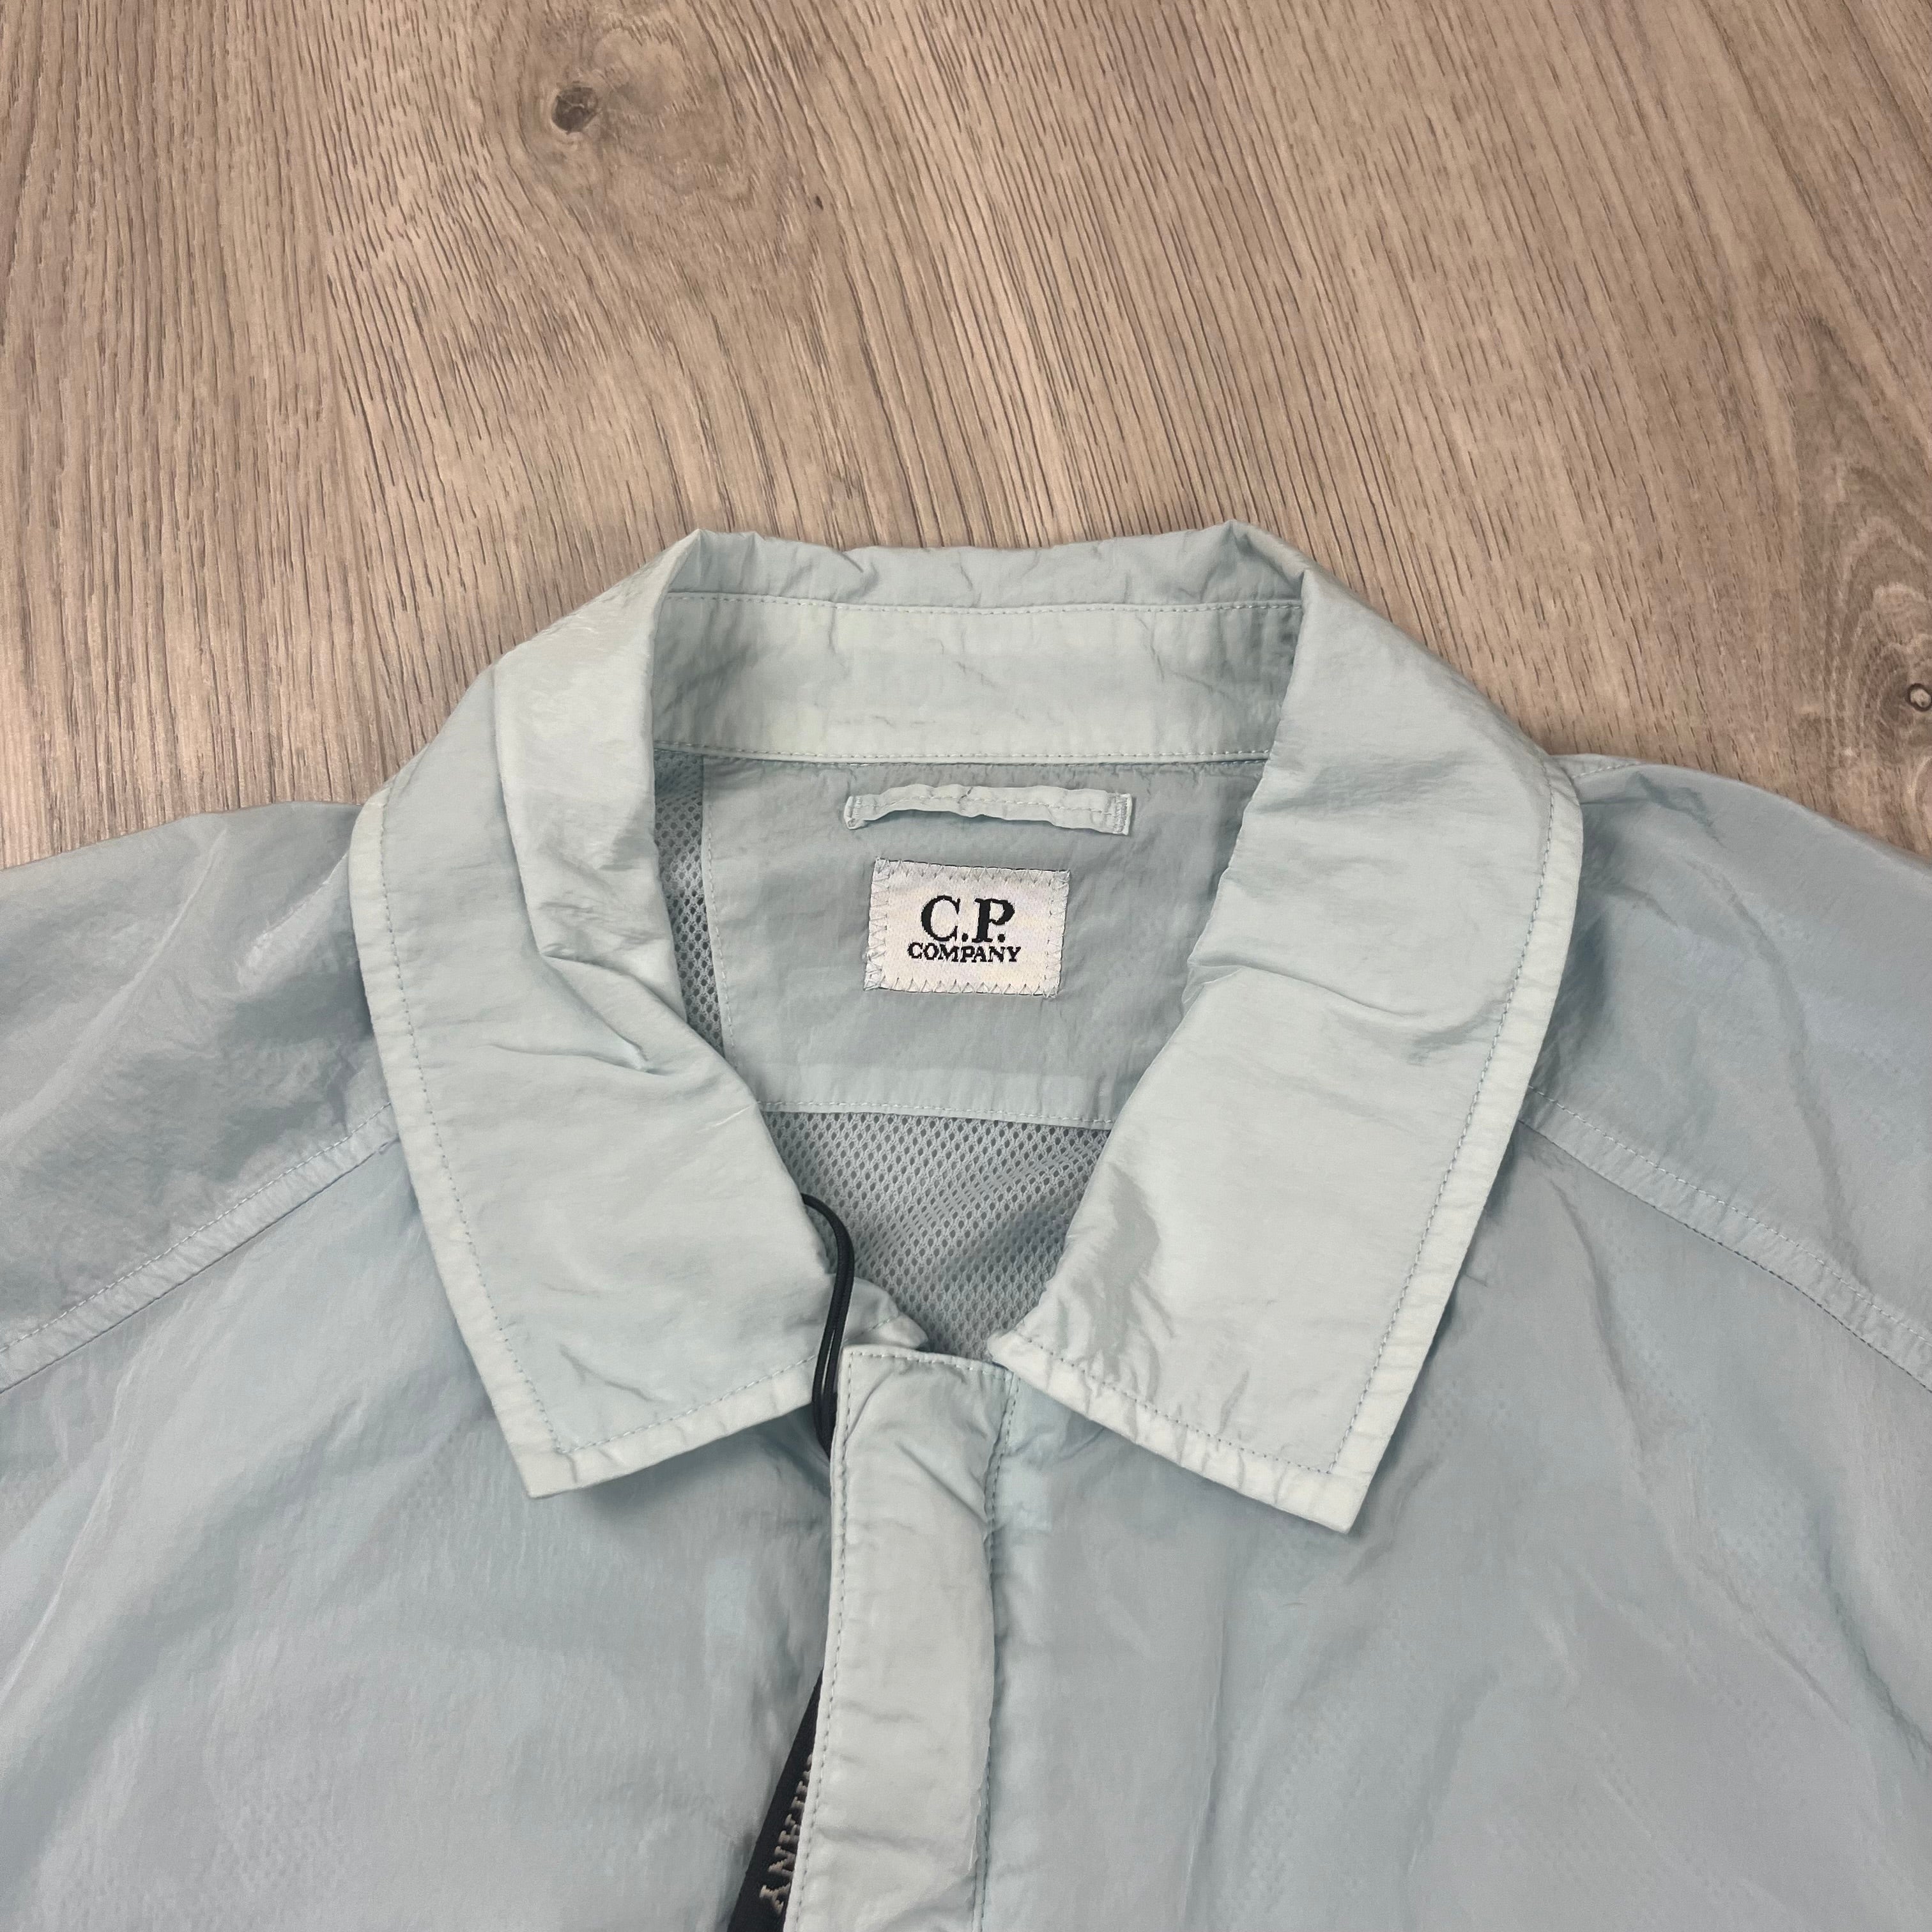 CP Company Nylon Overshirt